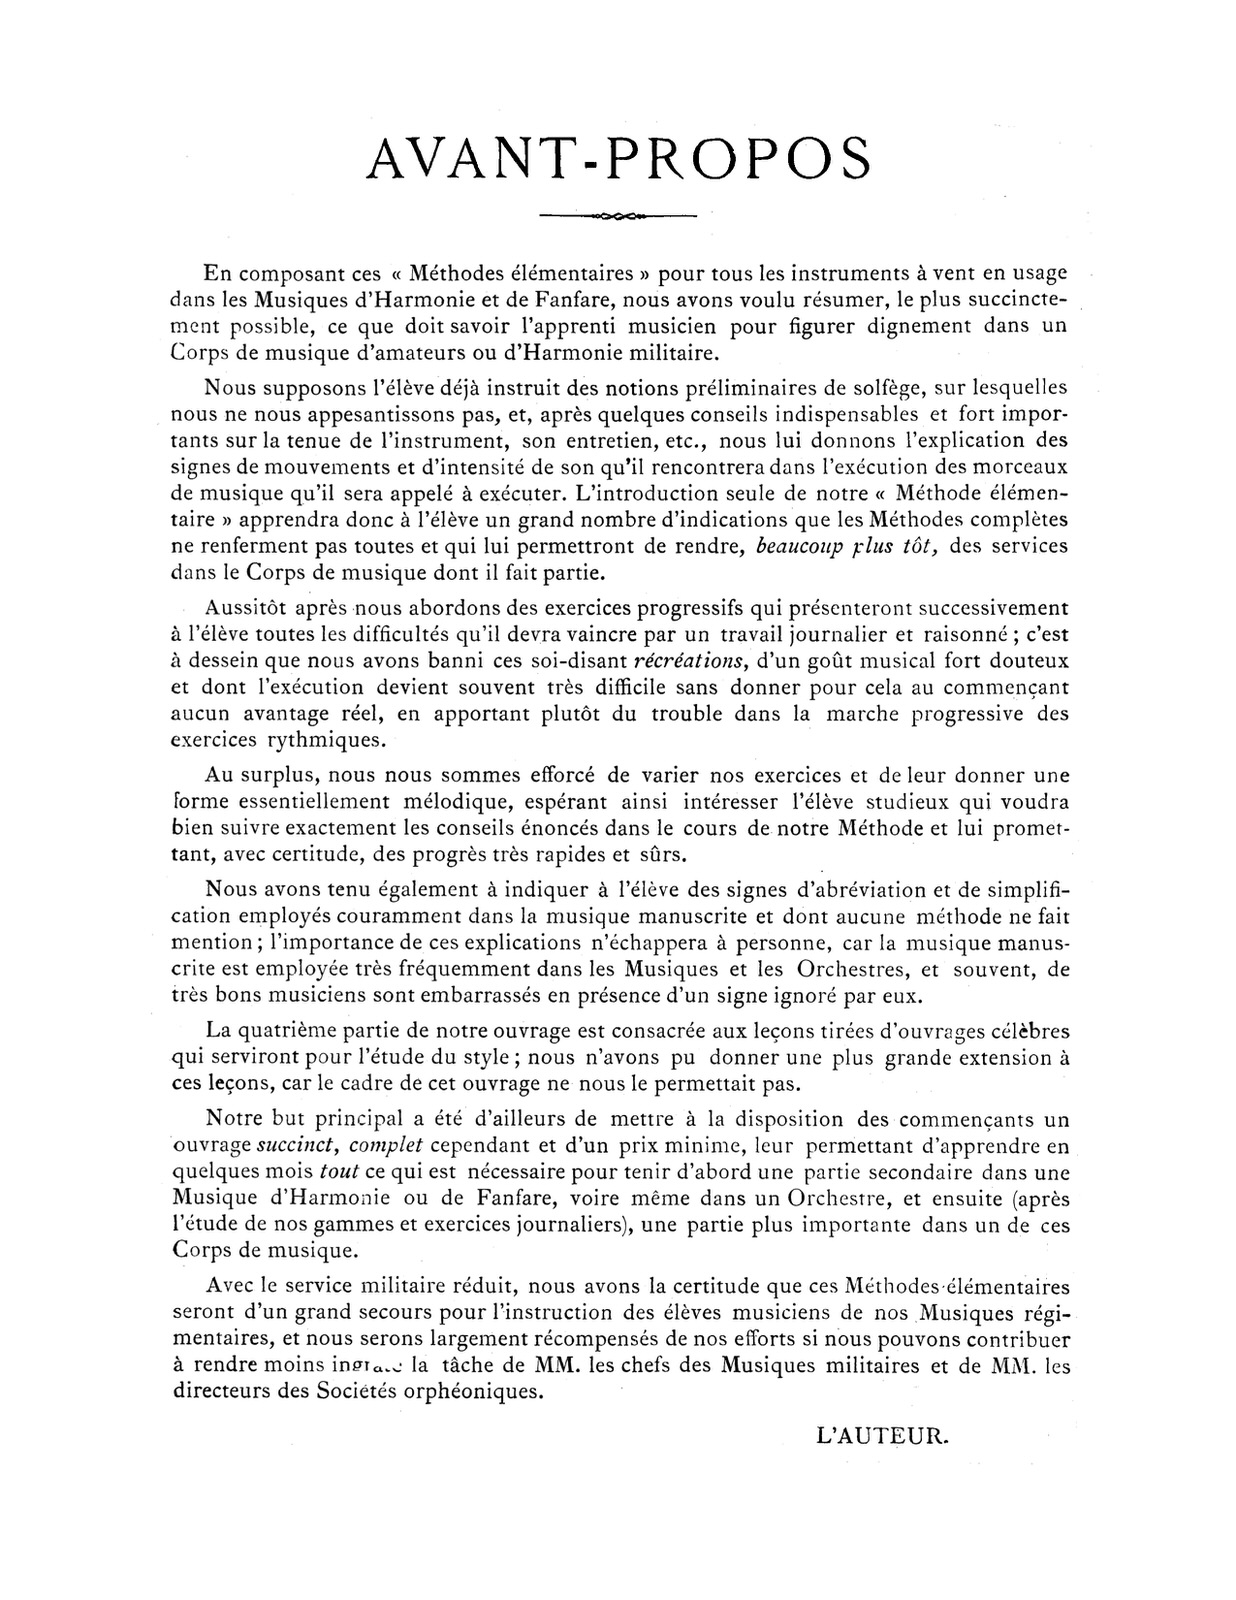 Methode Elementaire de Bugle by Parès, G. - qPress